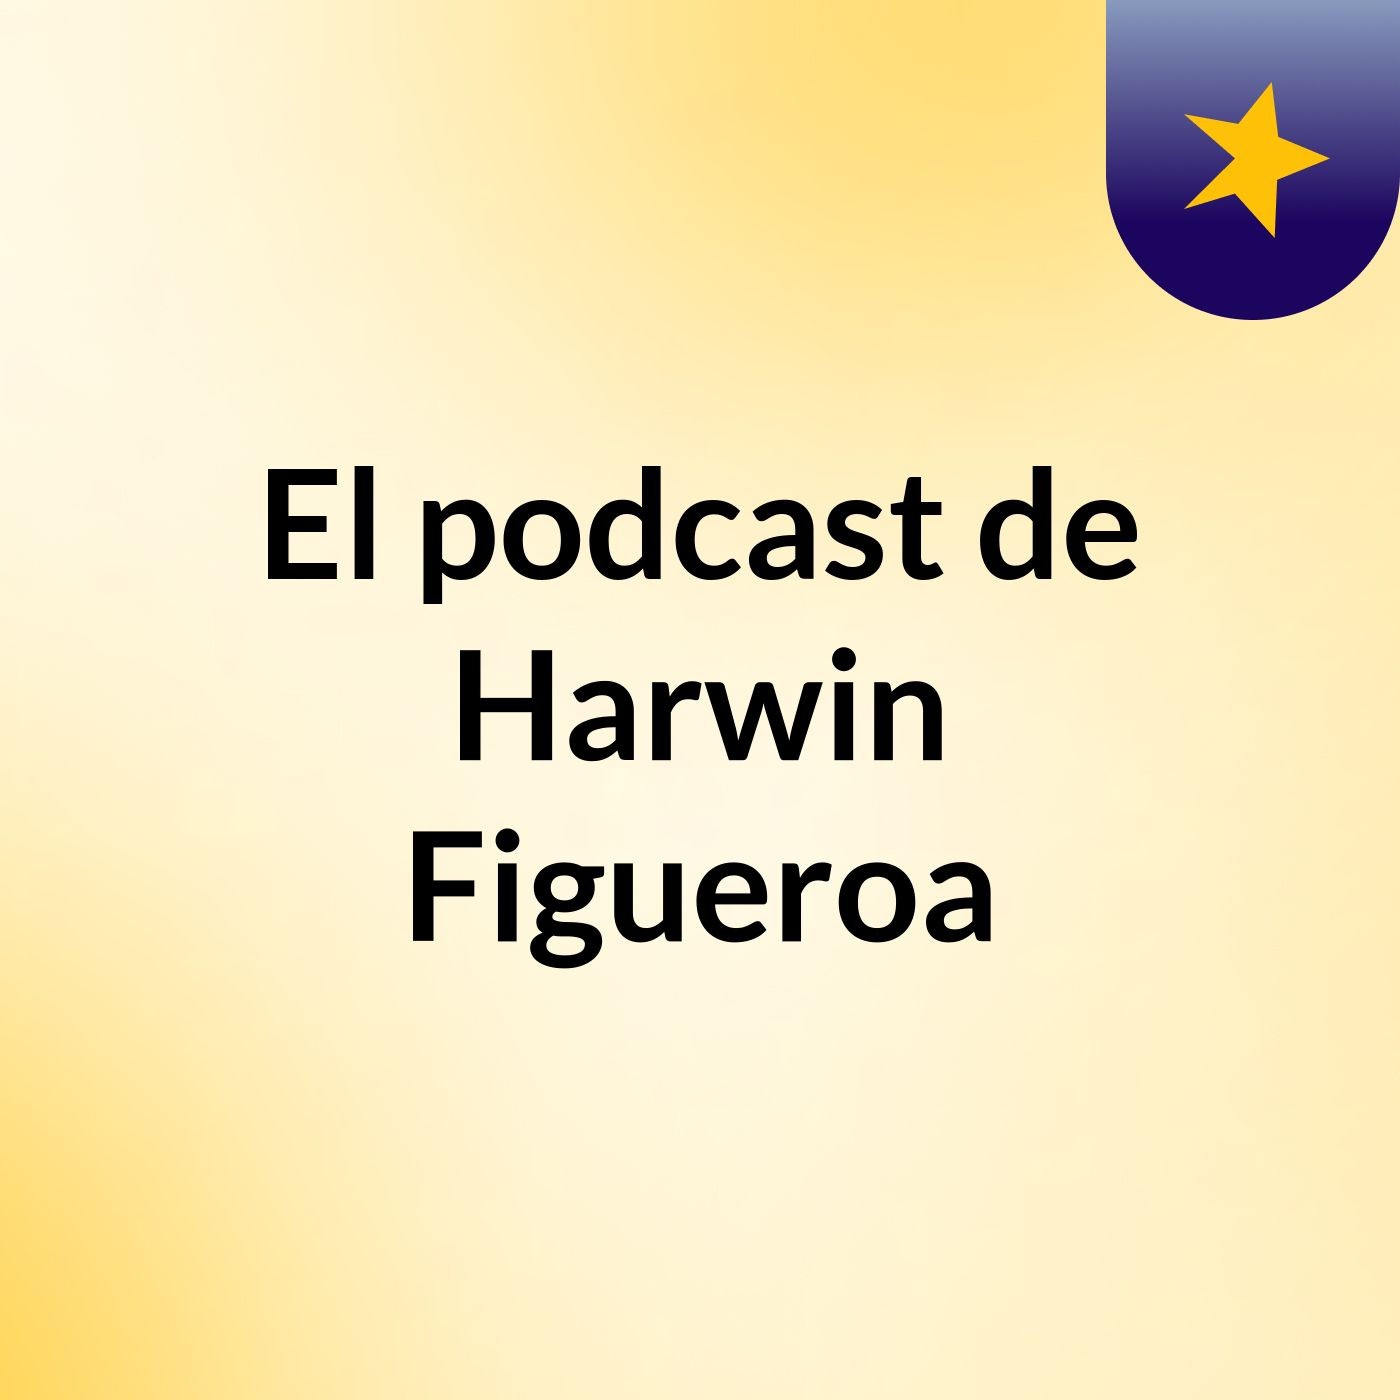 El podcast de Harwin Figueroa